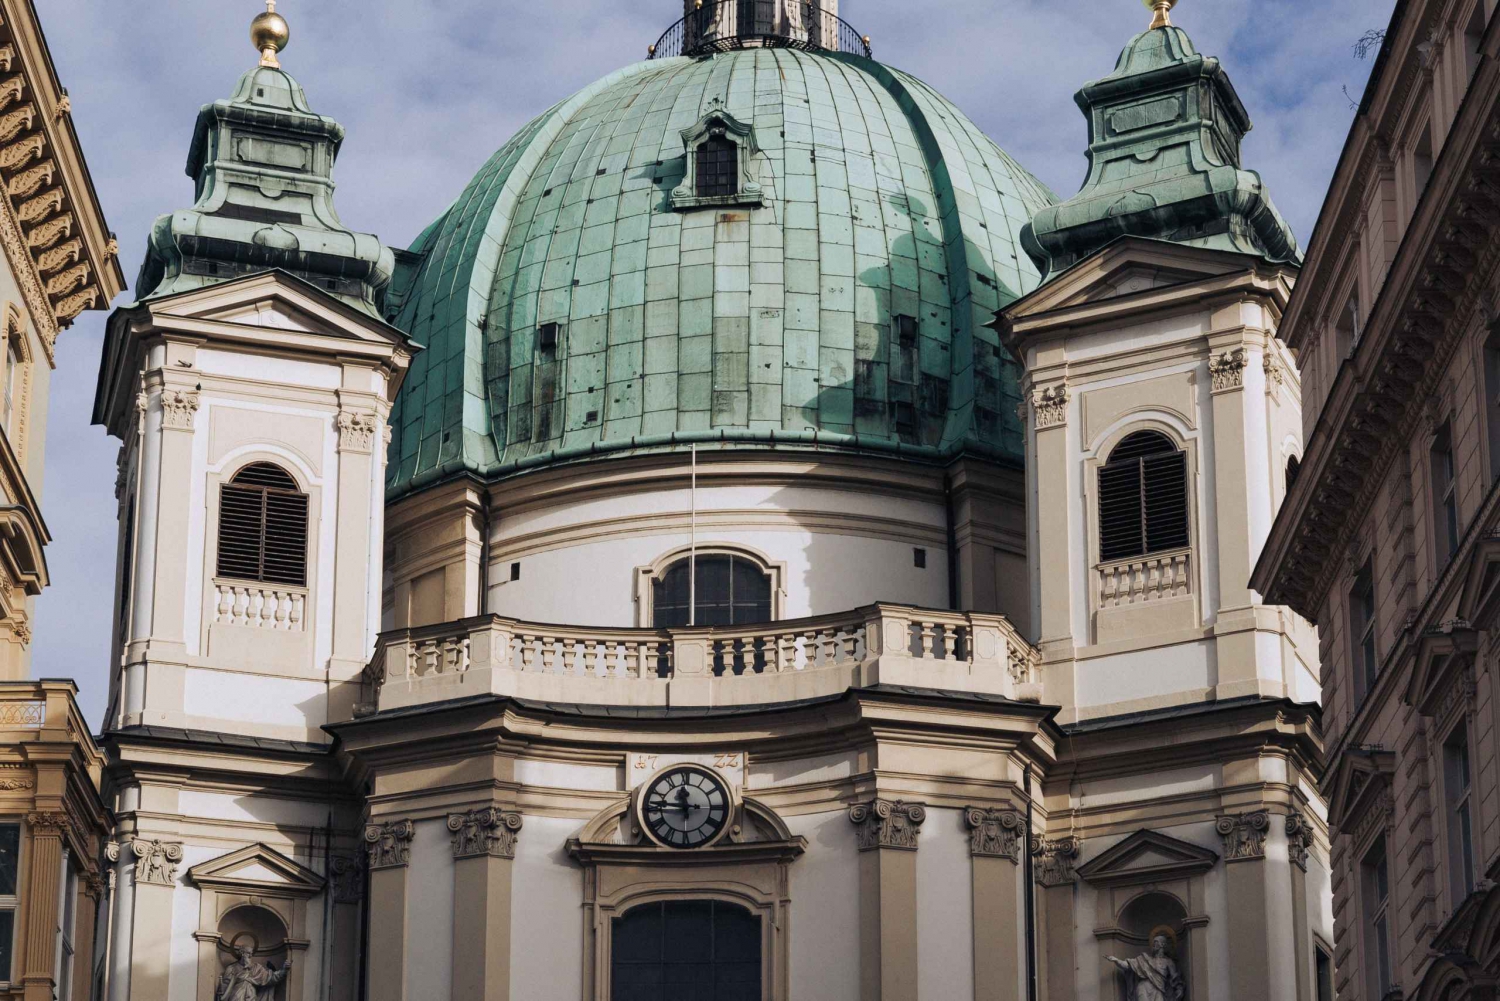 Odkryj Wiedeń podczas 2-godzinnej prywatnej wycieczki